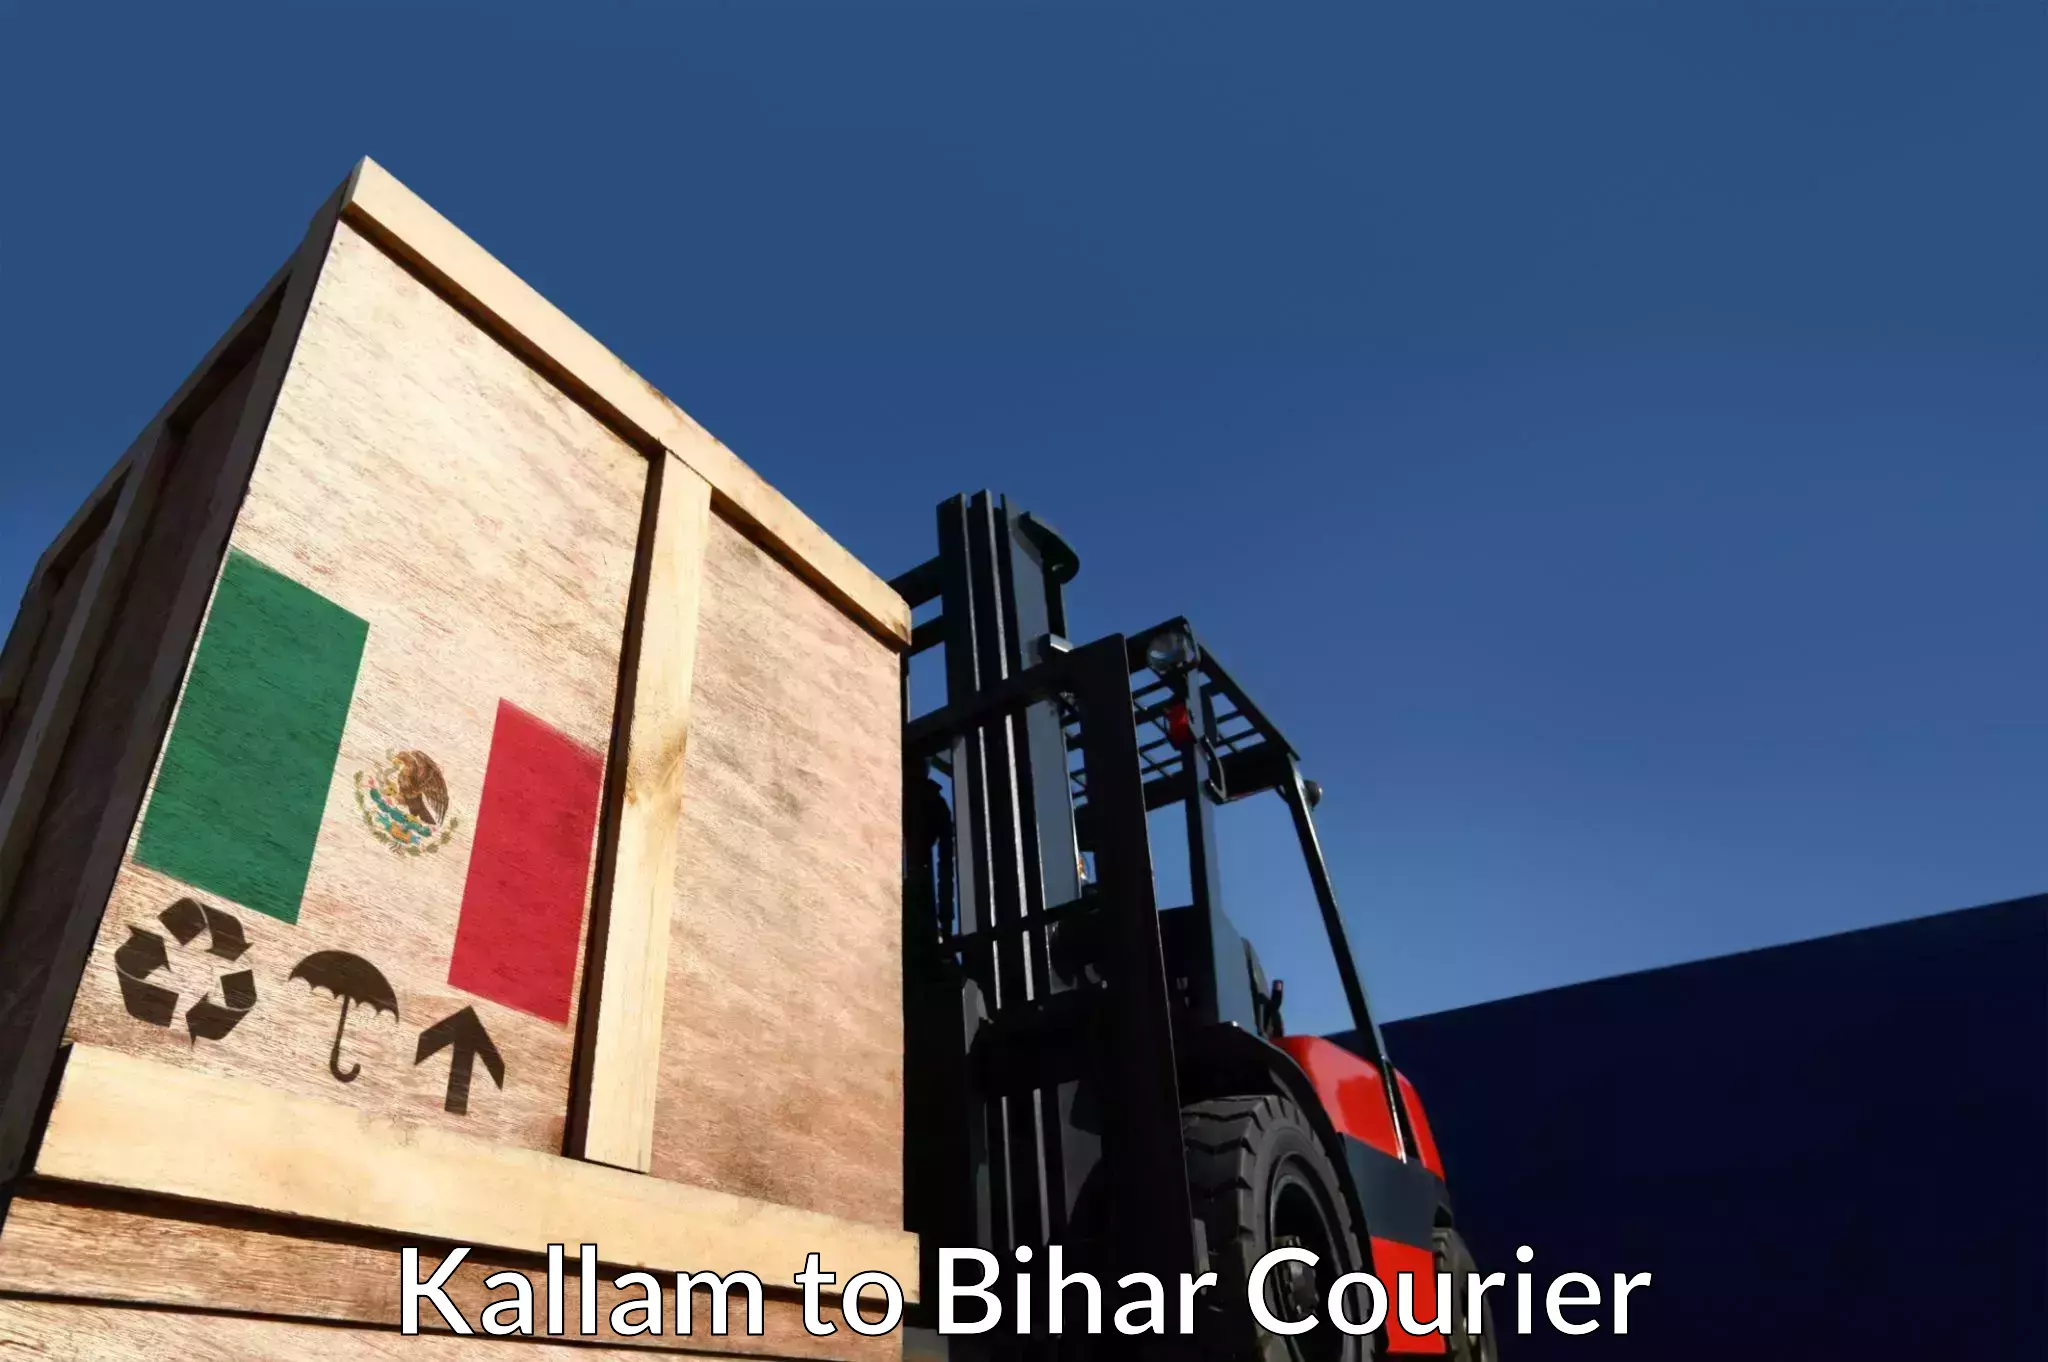 Express logistics service Kallam to Bihar